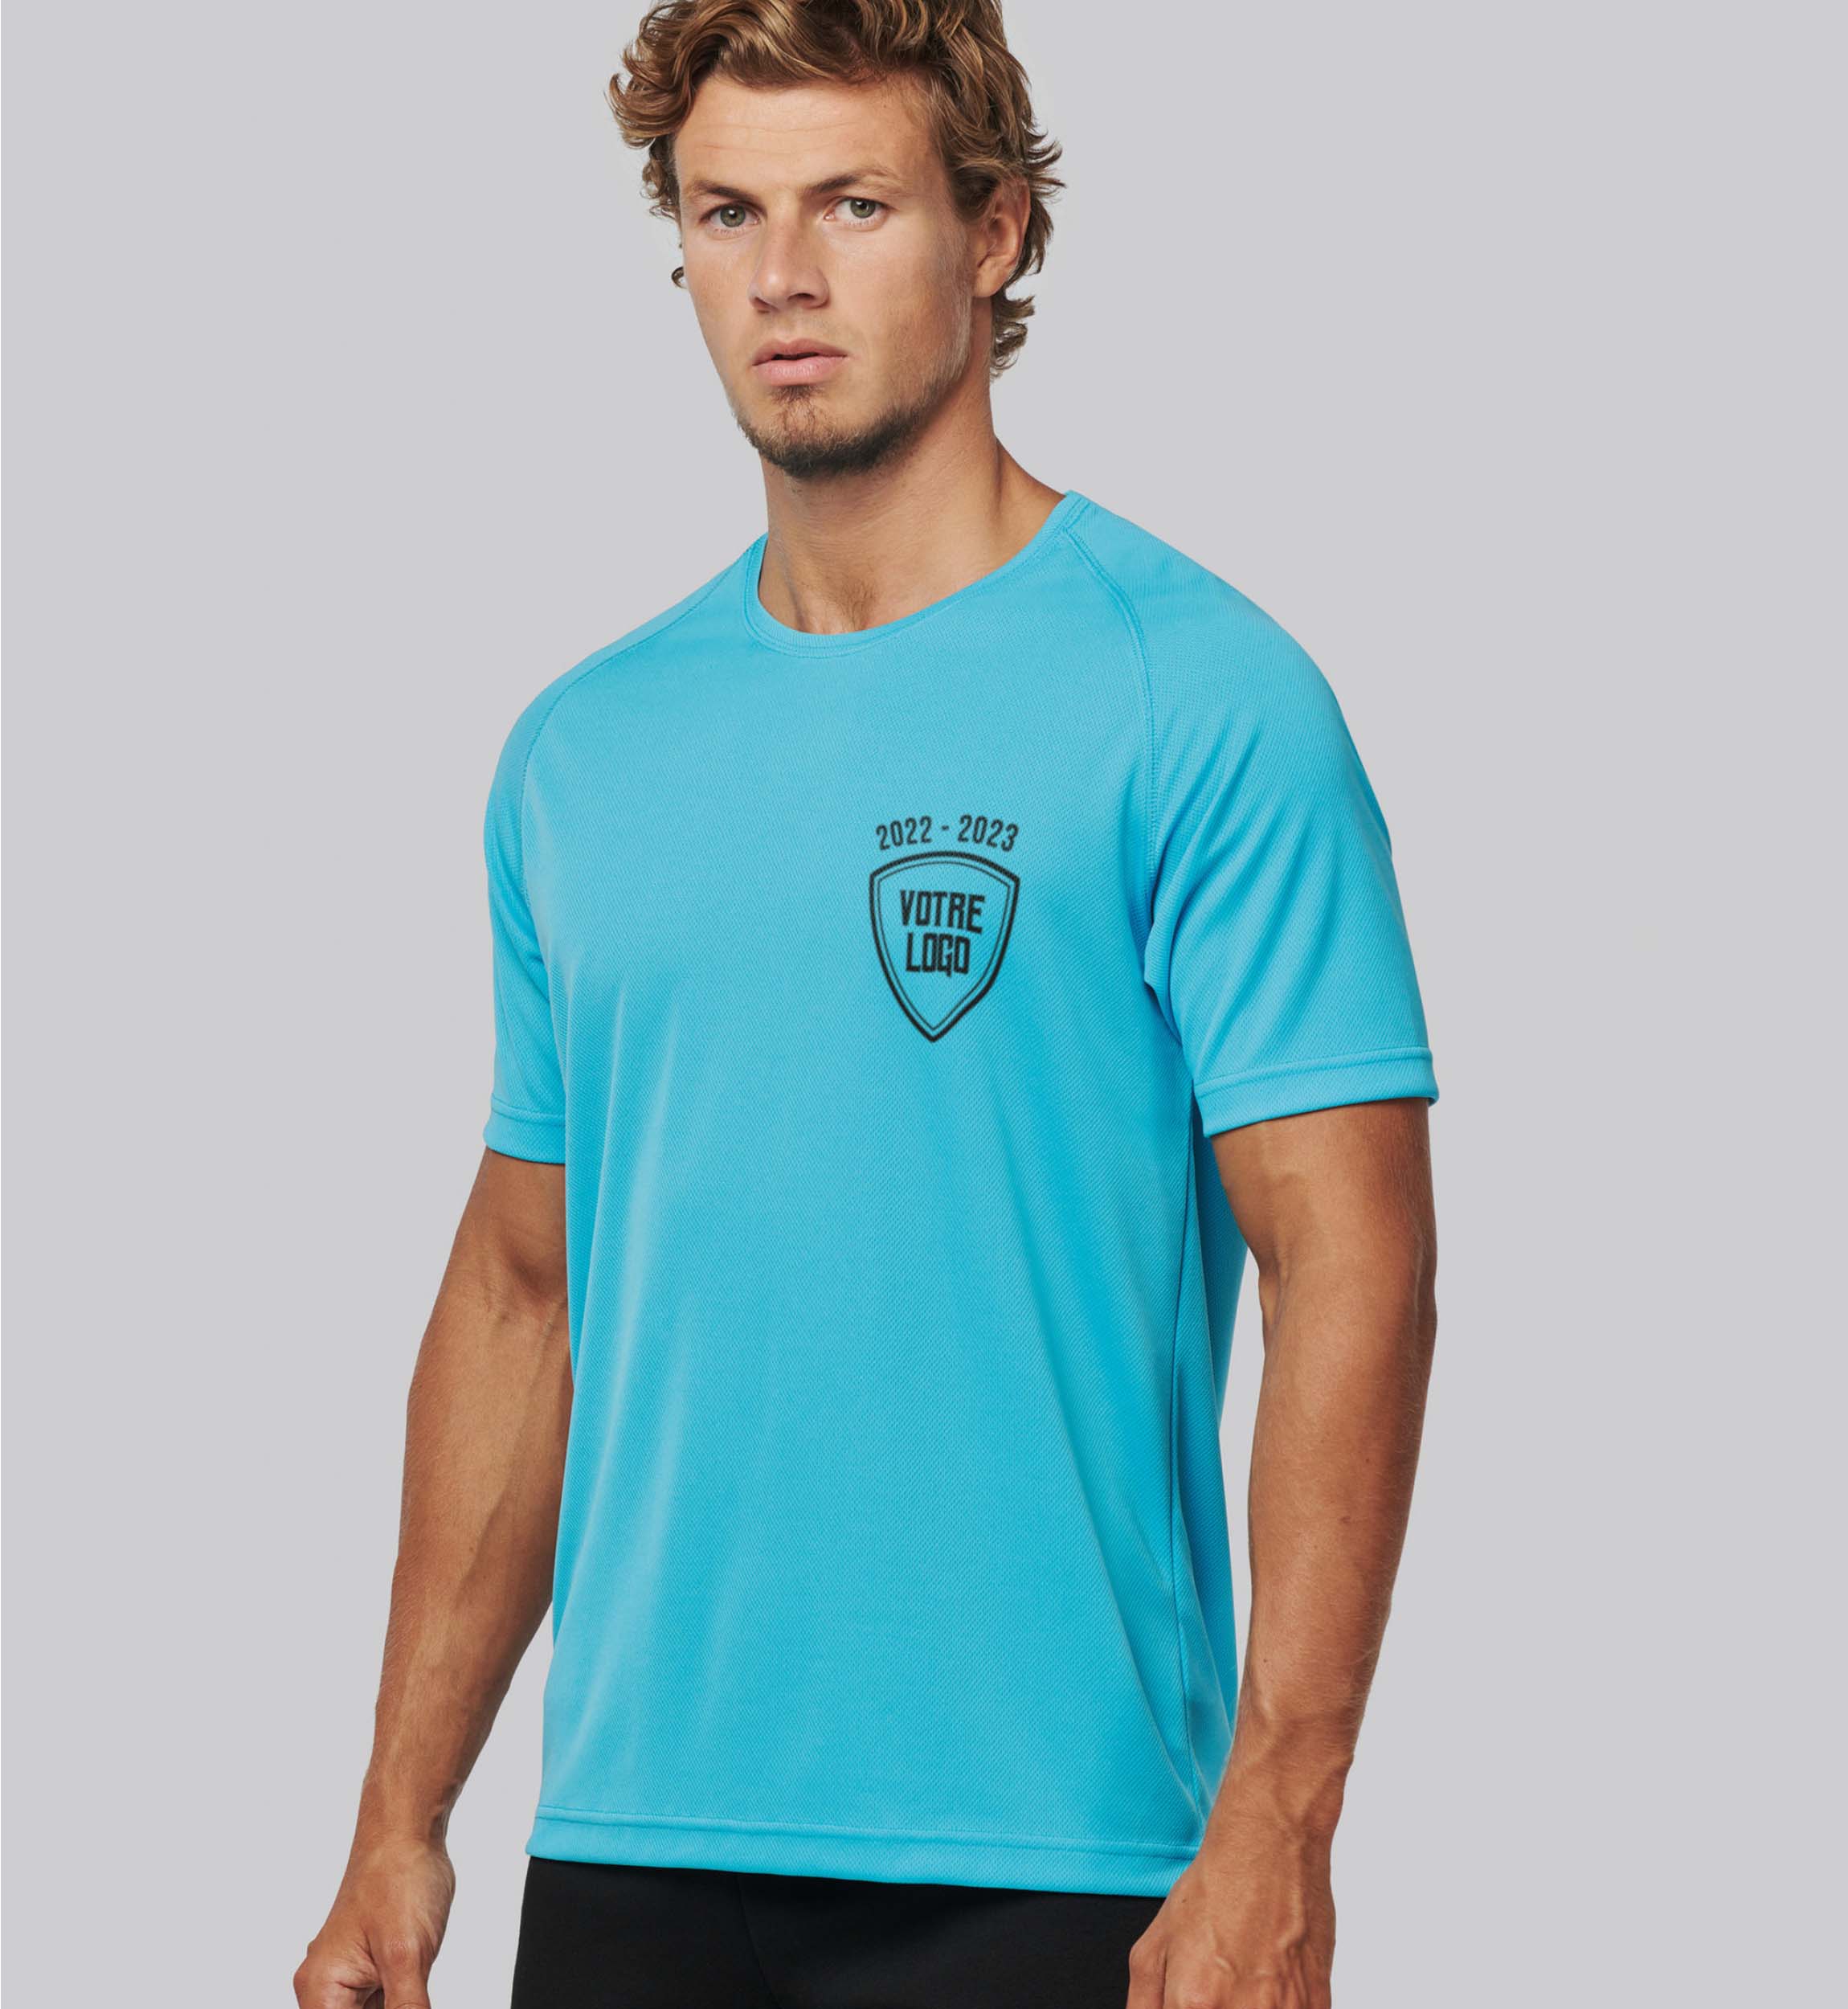 exemple de T-shirt Sport Homme couleur bleu cyan avec logo brodé sur le coeur